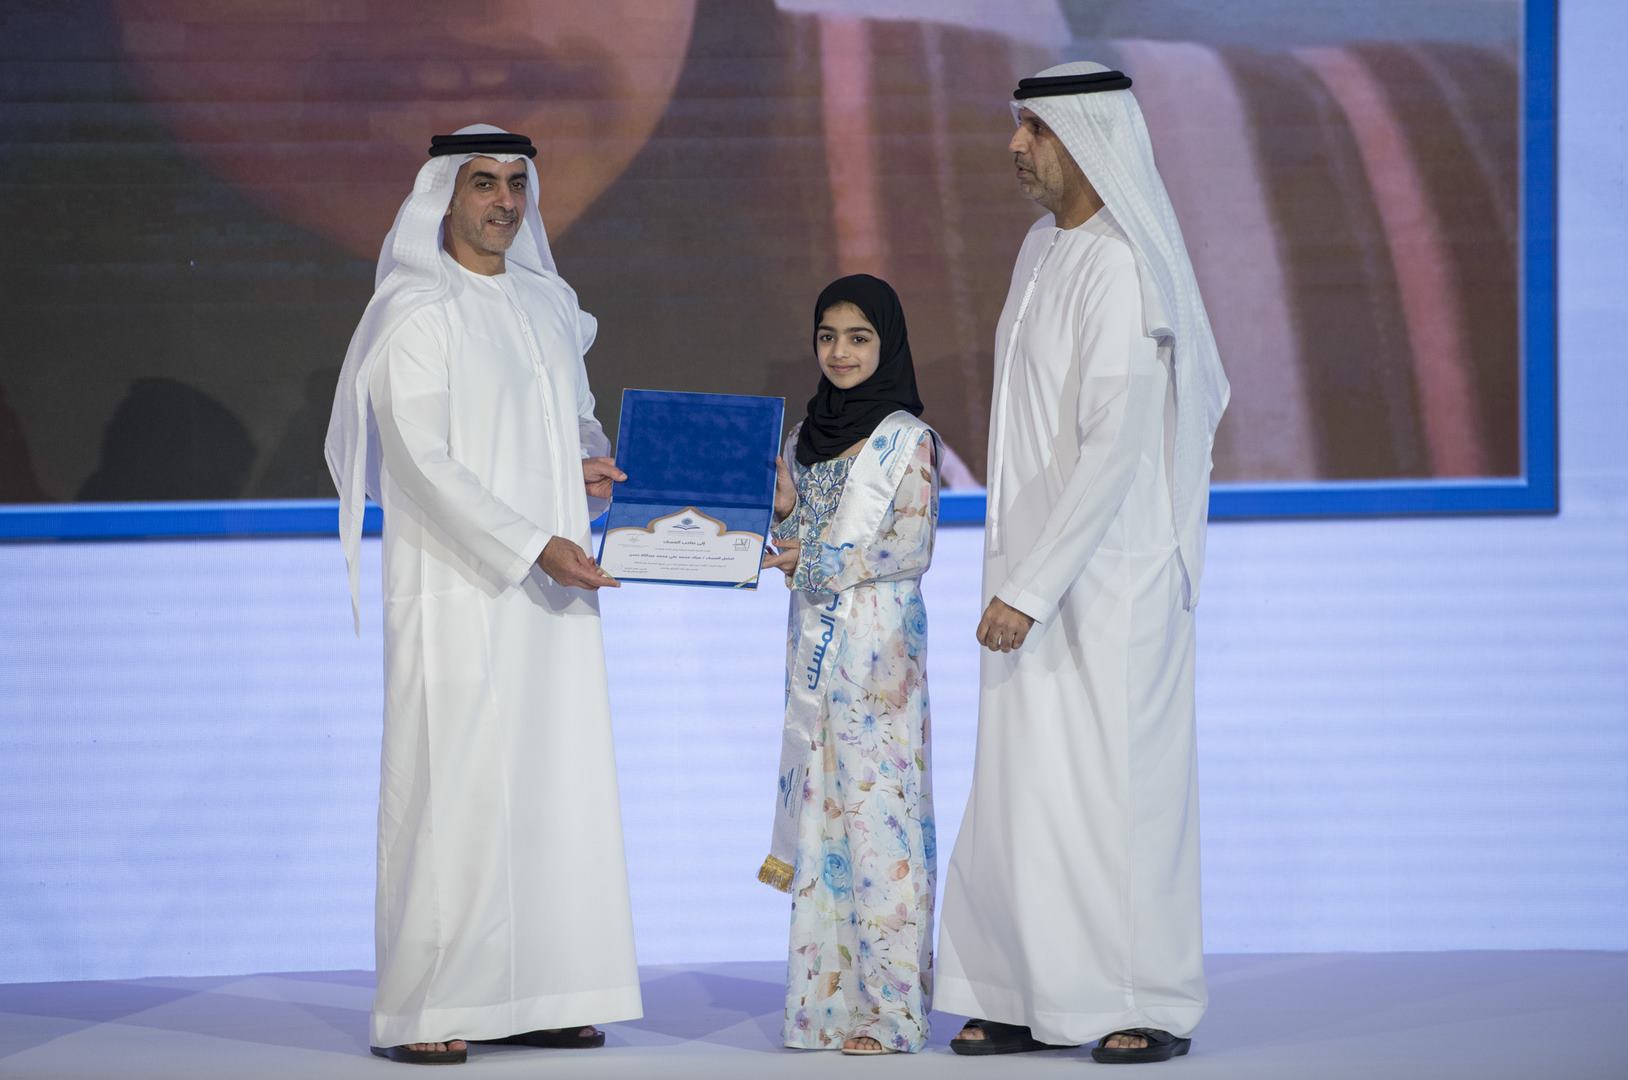 تكريم الفائزين بجائزة " التحبير للقرآن الكريم وعلومه " في دورتها الخامسة